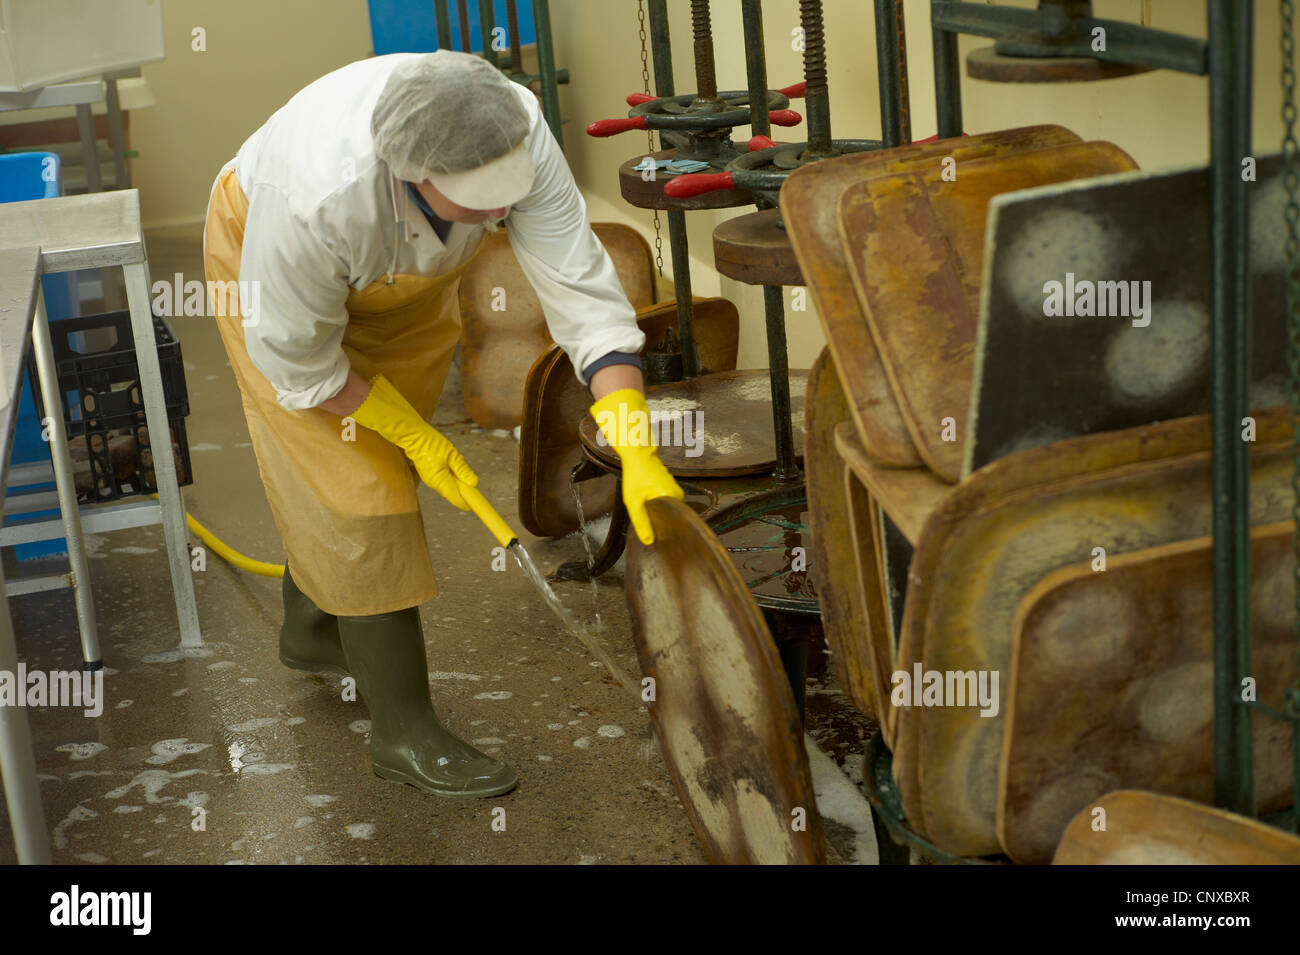 La fabrication du fromage à Curworthy Devon ferme - nettoyage de la presse à fromage Banque D'Images